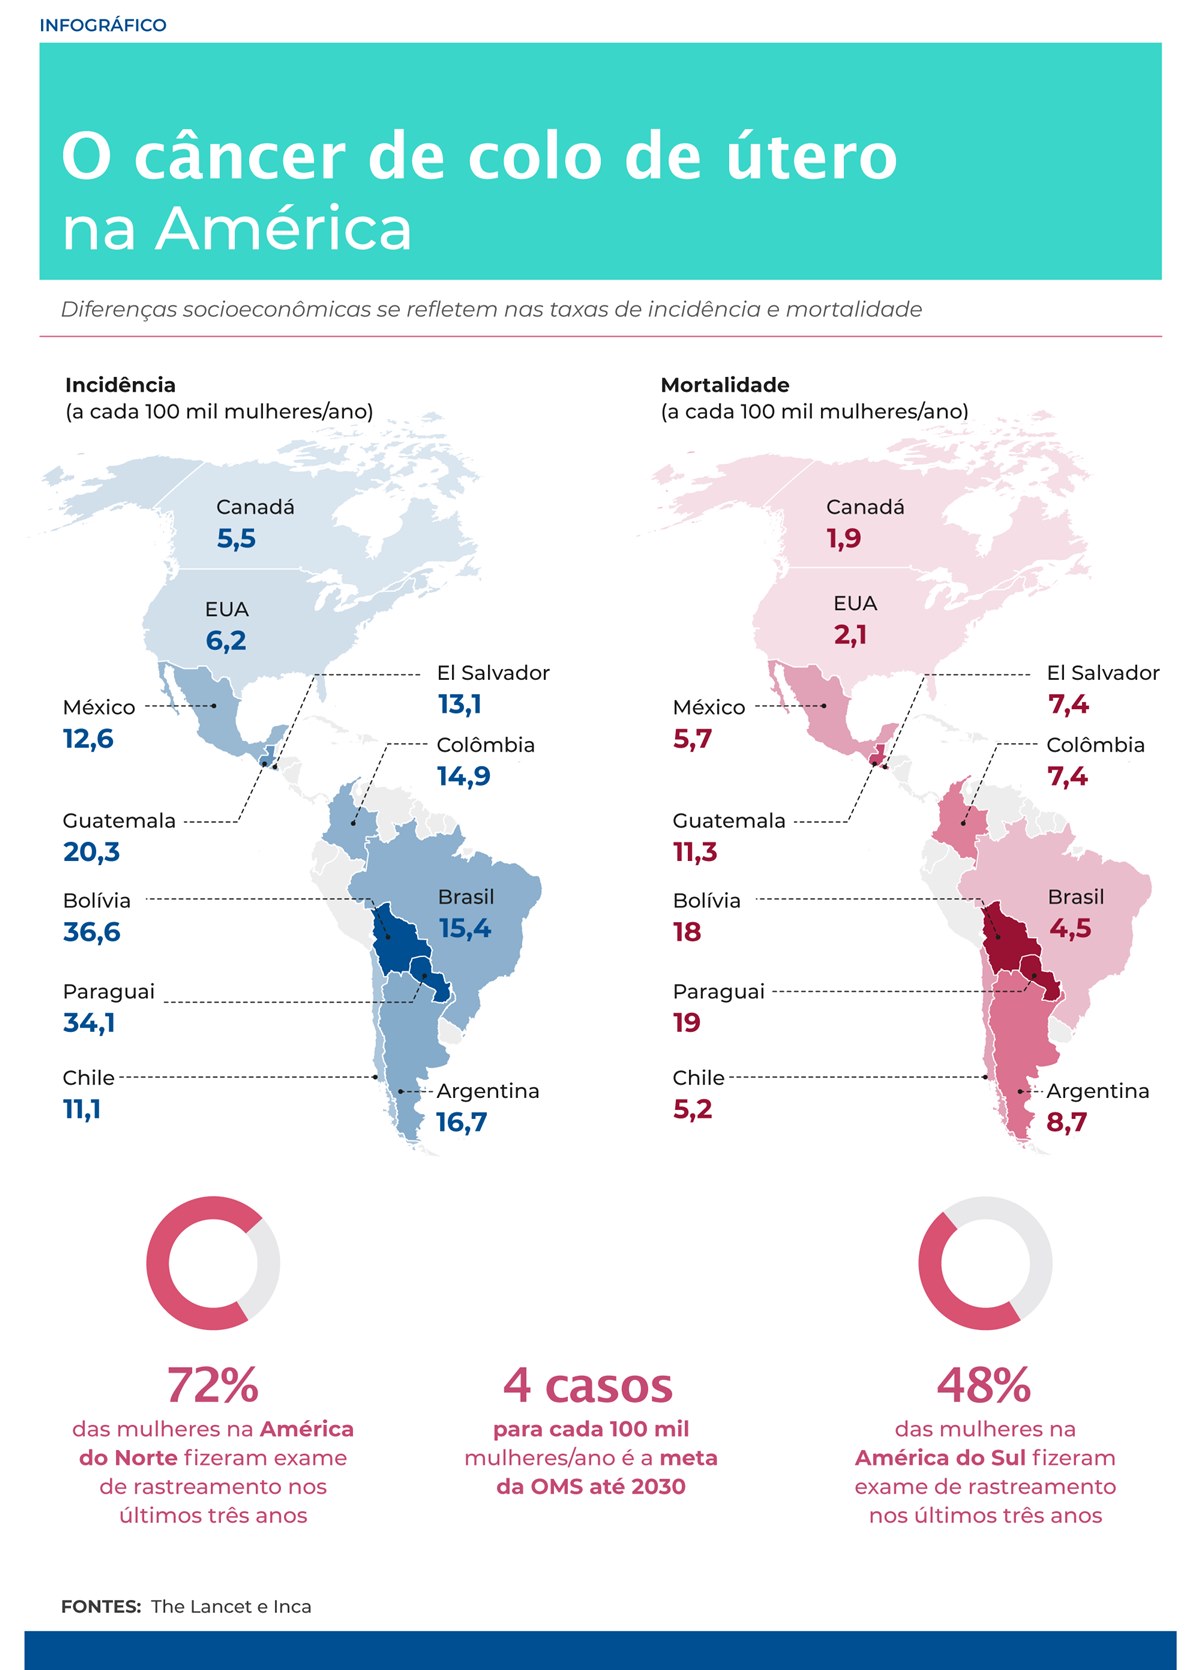 Infográfico mostra informações sobre o câncer de colo de útero nas Américas - Metrópoles